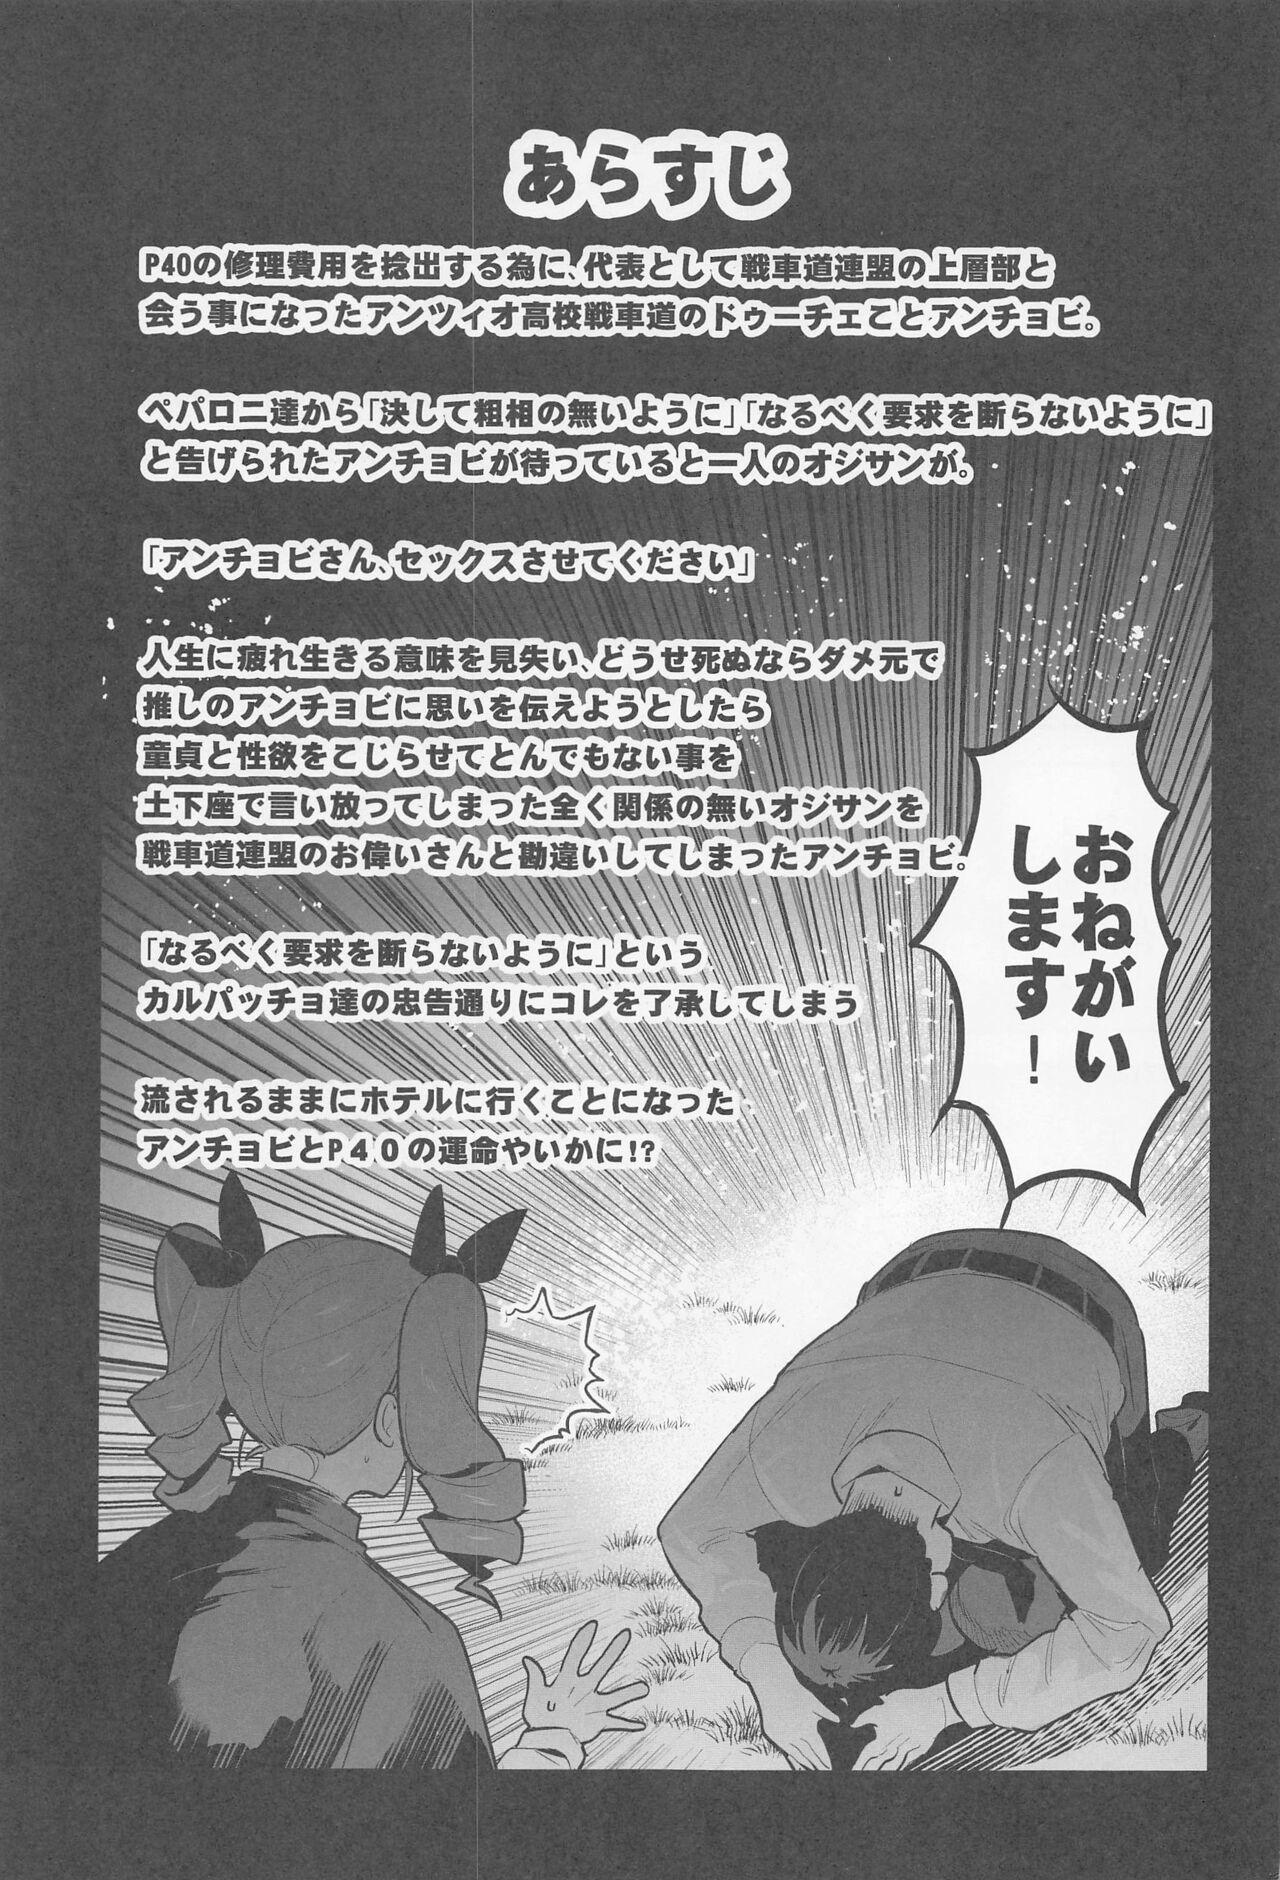 Hand anchobi dogezadeonegaishitaraippatsuyarasetekuremashita - Girls und panzer Free Fuck - Page 2